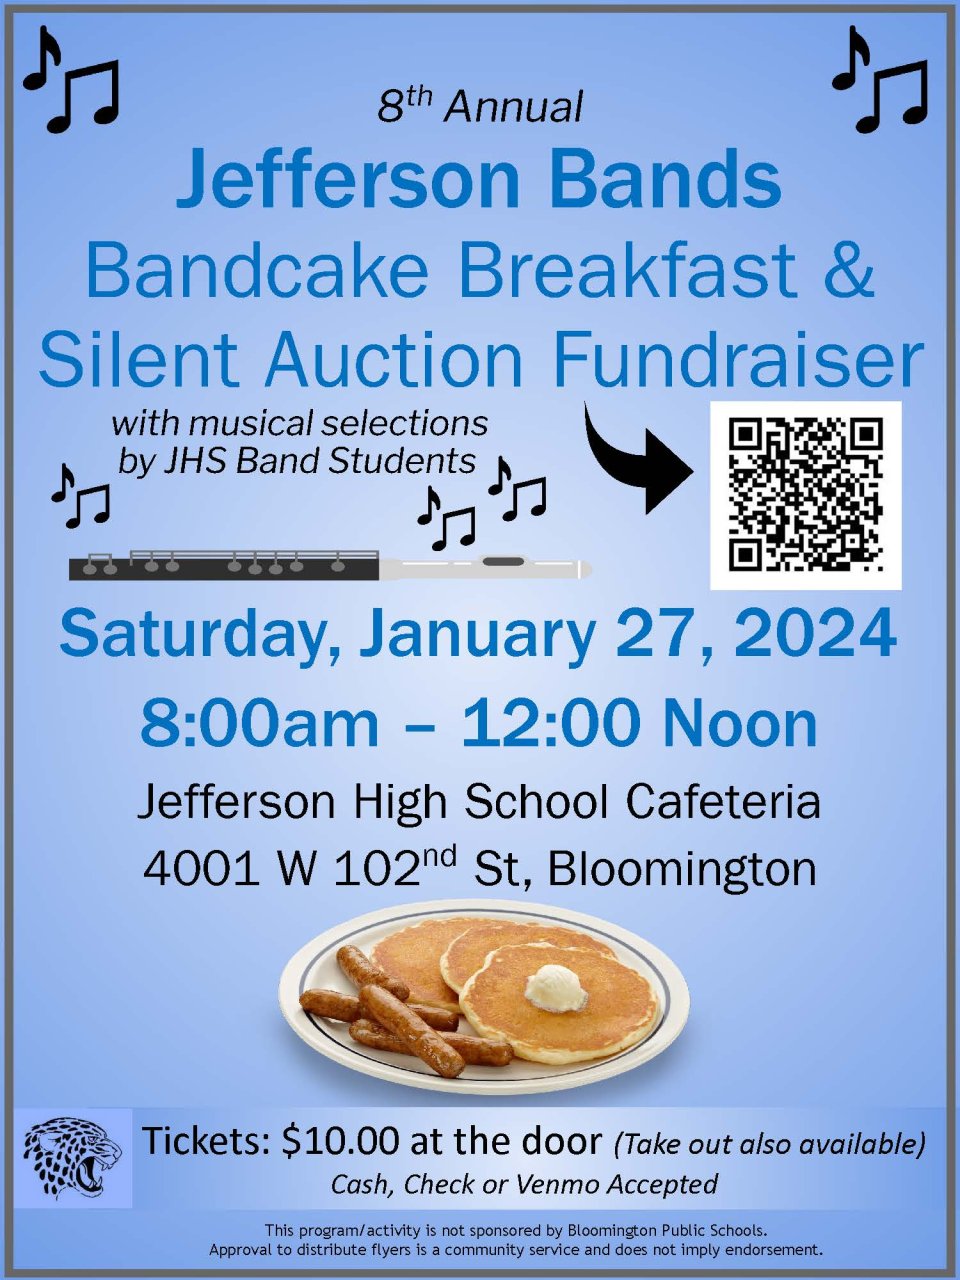 Jefferson Bands “Bandcake” Breakfast flyer